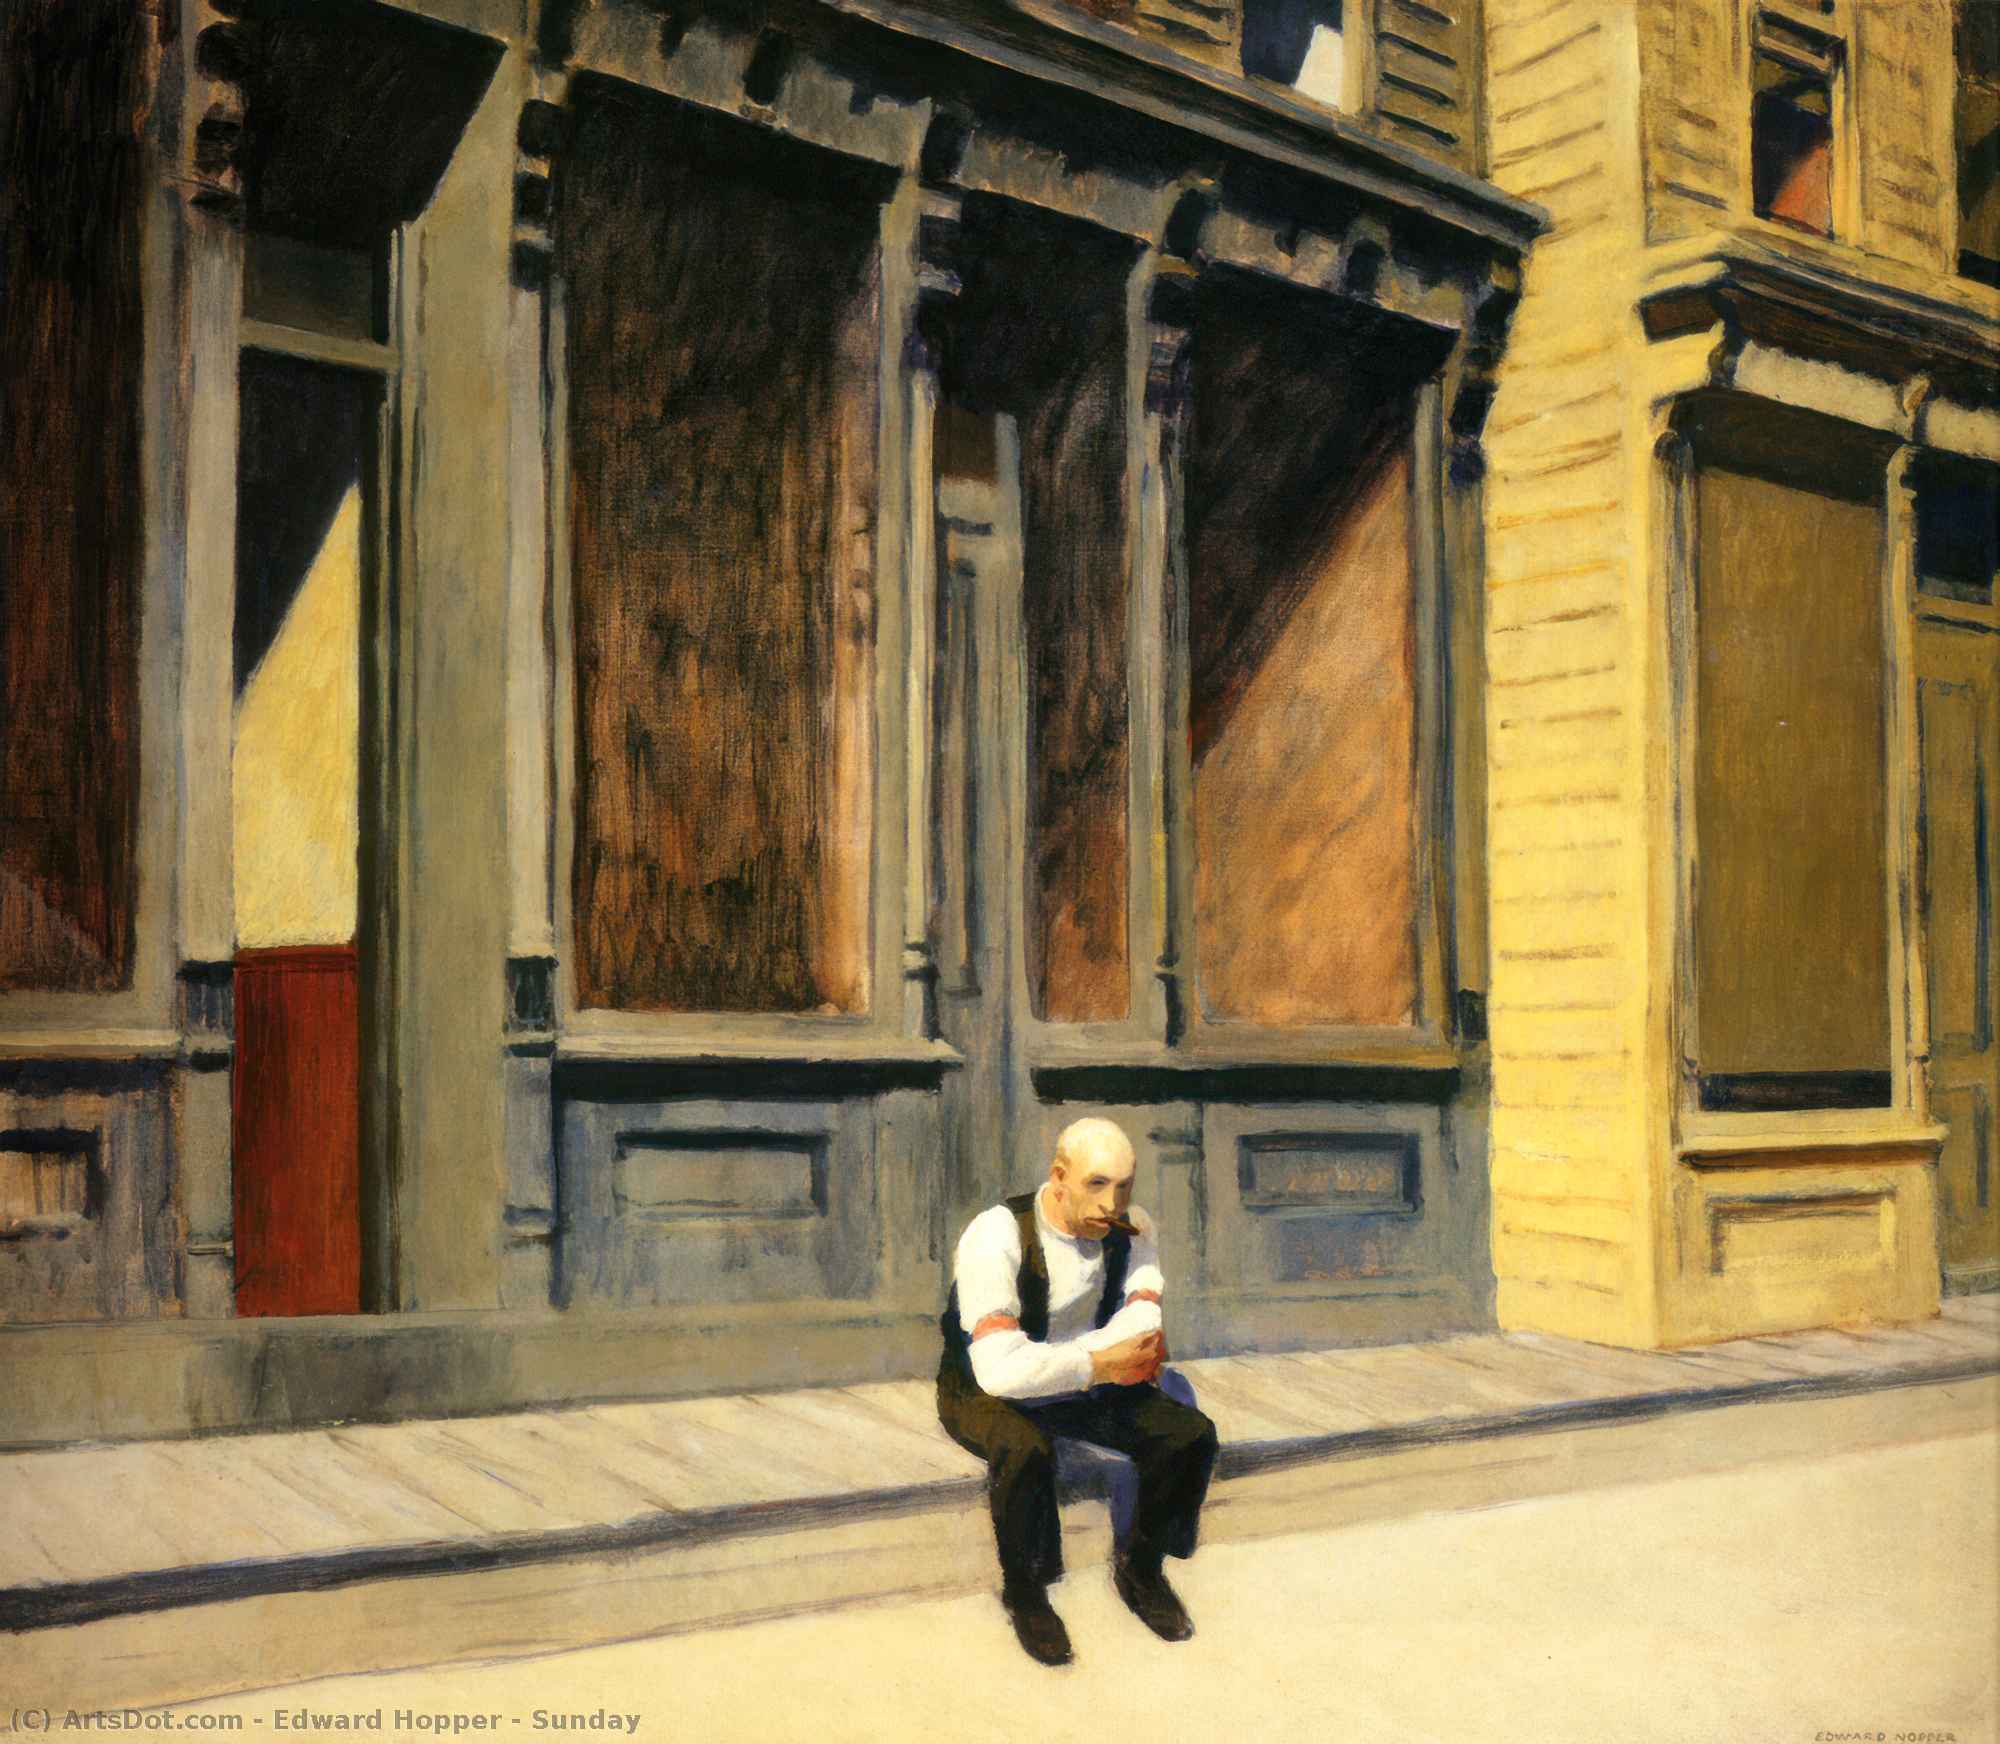 购买 博物馆艺术复制品，艺术复制品，绘画复制品，博物馆质量版画，美术复制品，着名绘画复制品，博物馆品质复制品，帆布艺术版画 礼拜, 1926 通过 Edward Hopper (灵感来自) (1931-1967, United States) | ArtsDot.com